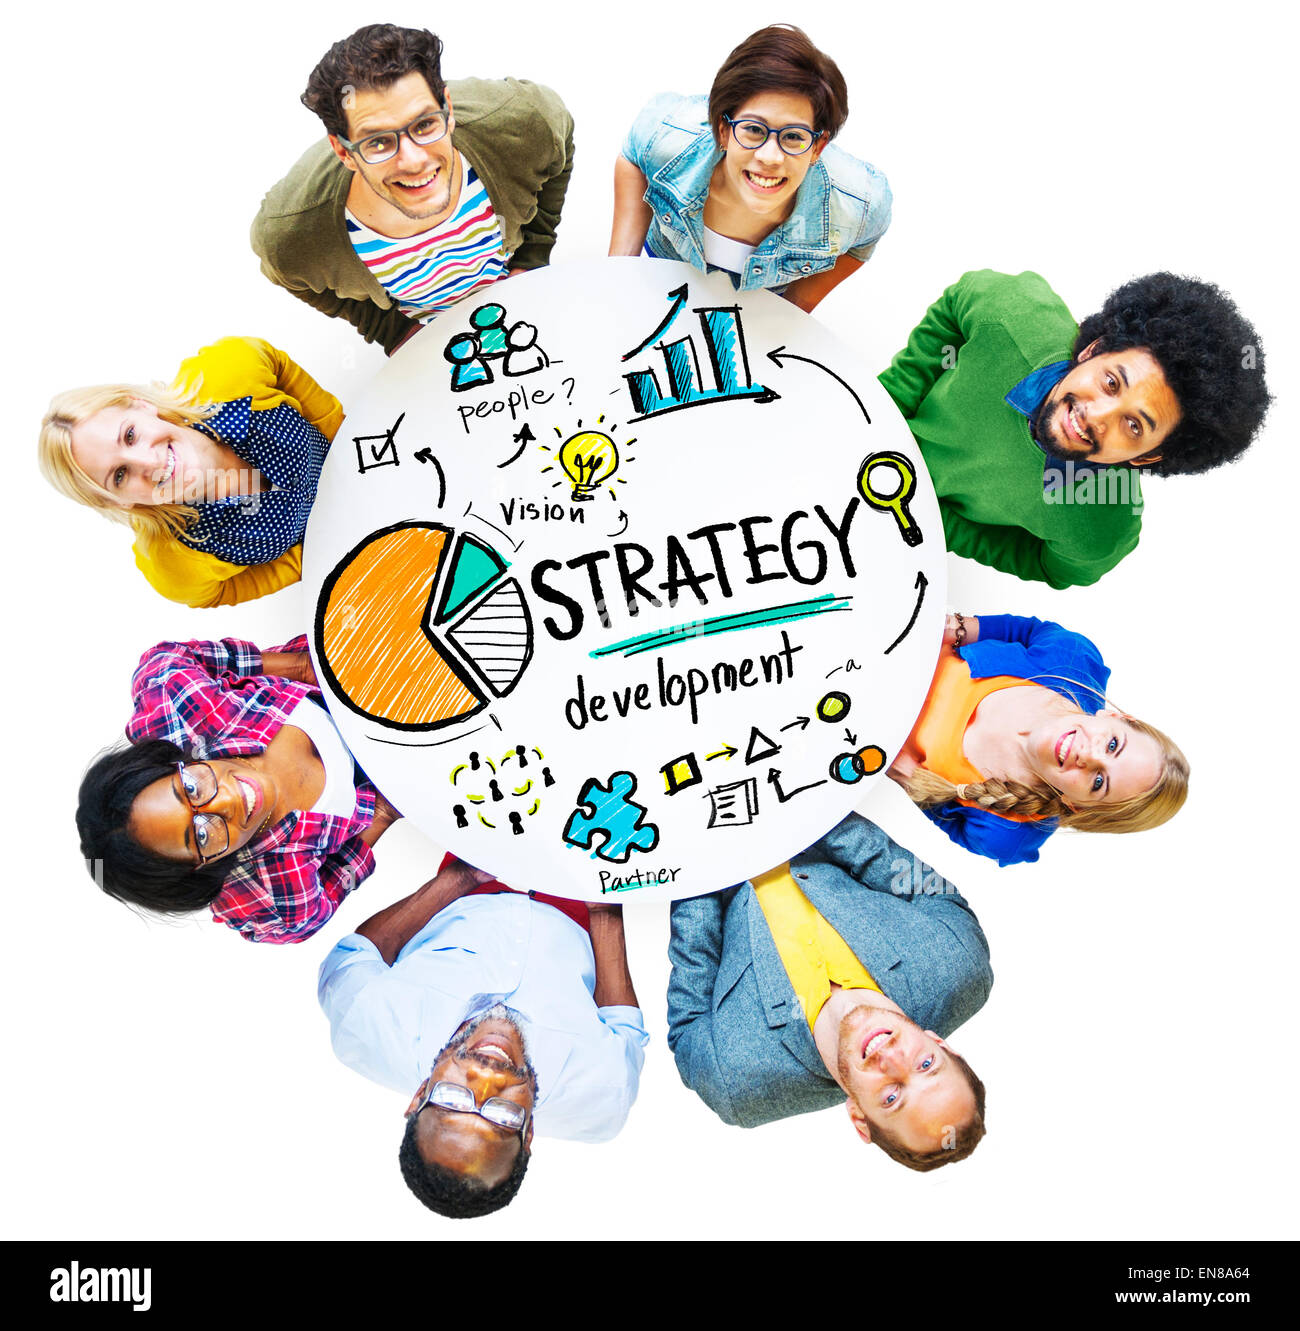 Strategie Entwicklung Ziel Marketing Vision Planung Business-Konzept Stockfoto